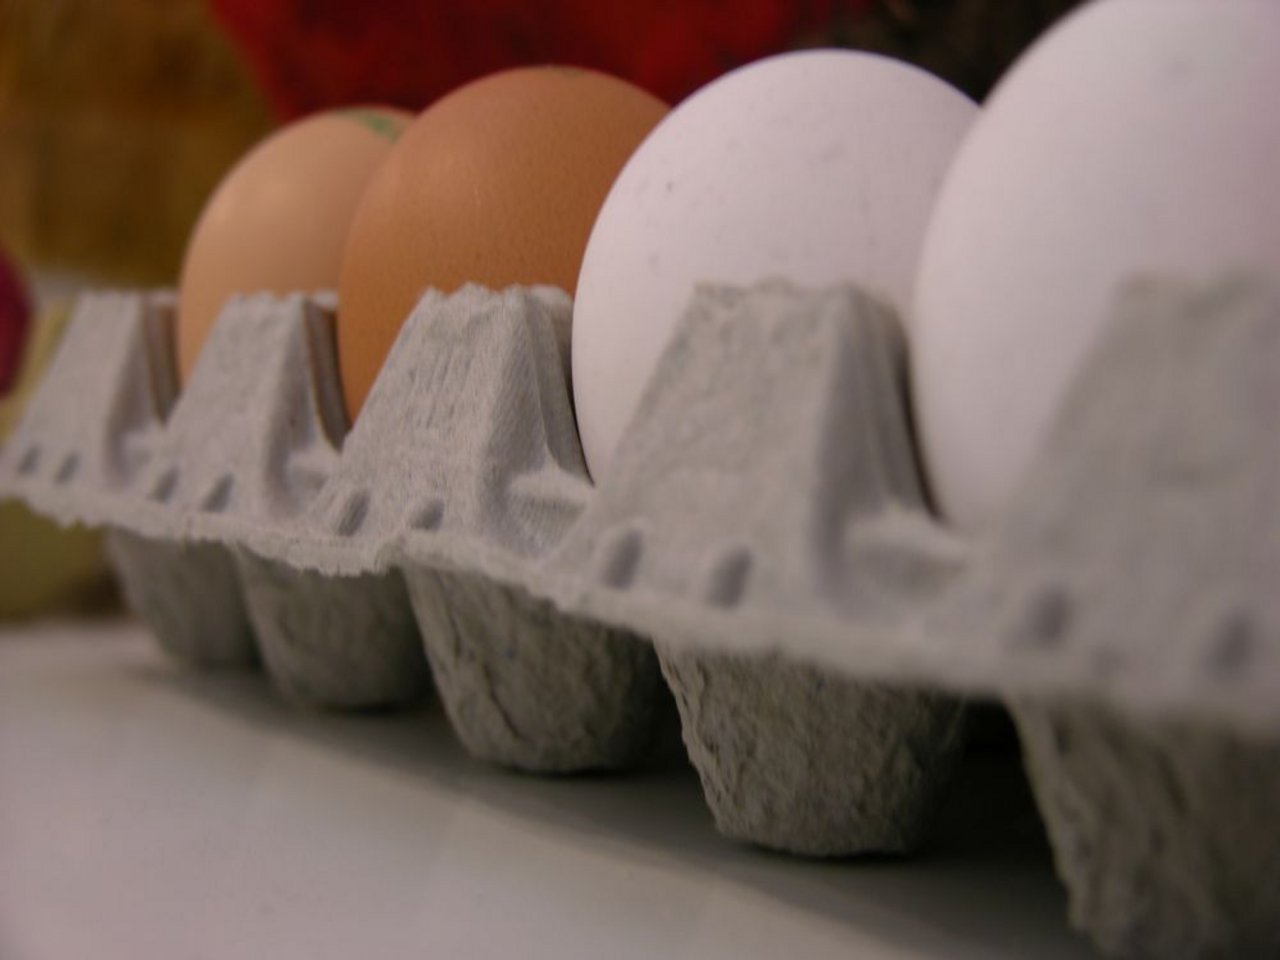 Der Eierkonsum läuft zurzeit auf hohem Niveau. (Bild: BauZ)